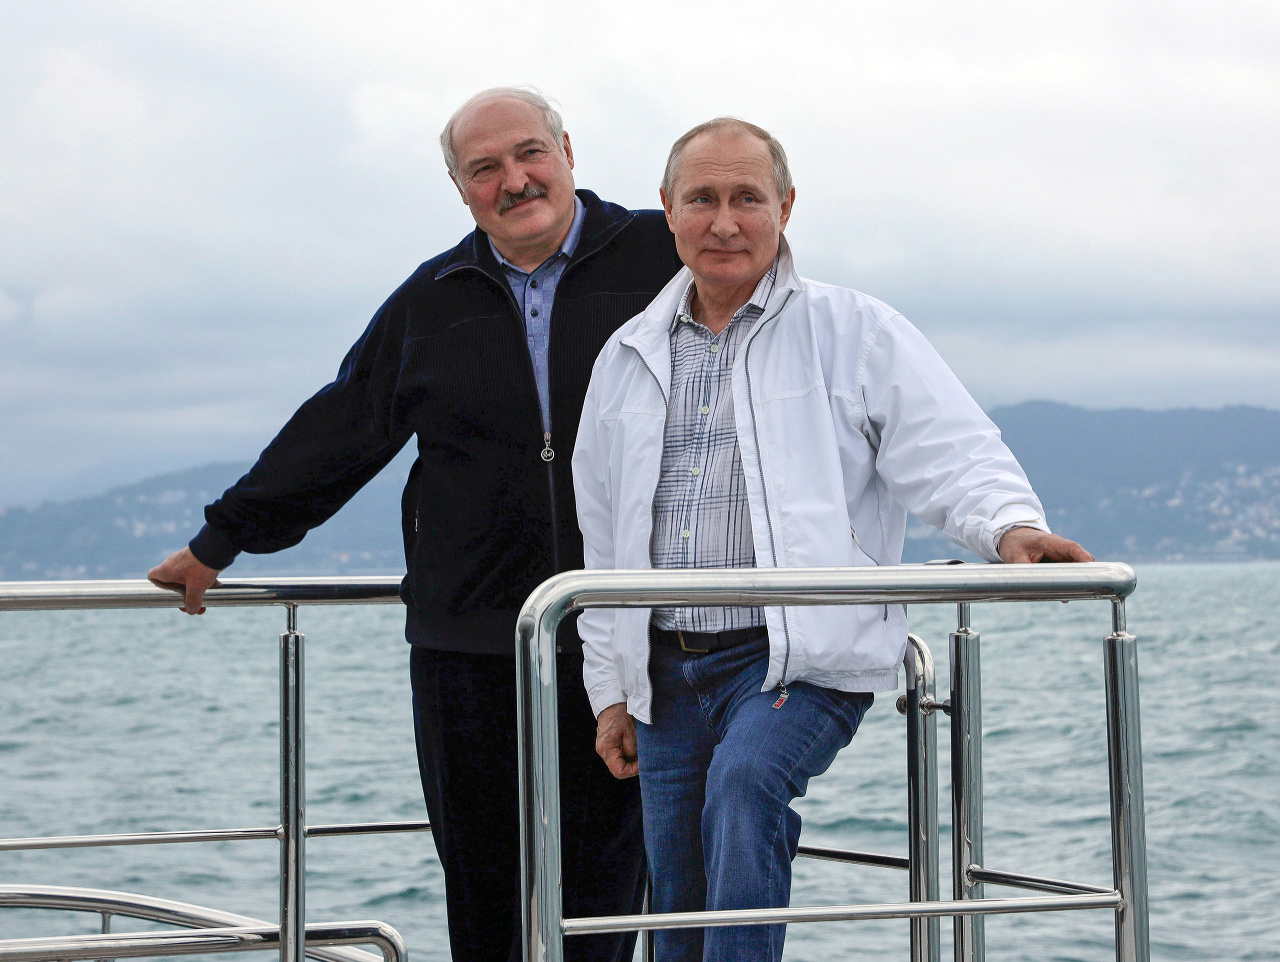 Vladimir Putin a Alexandr Lukašensko vo vzájomnom objatí